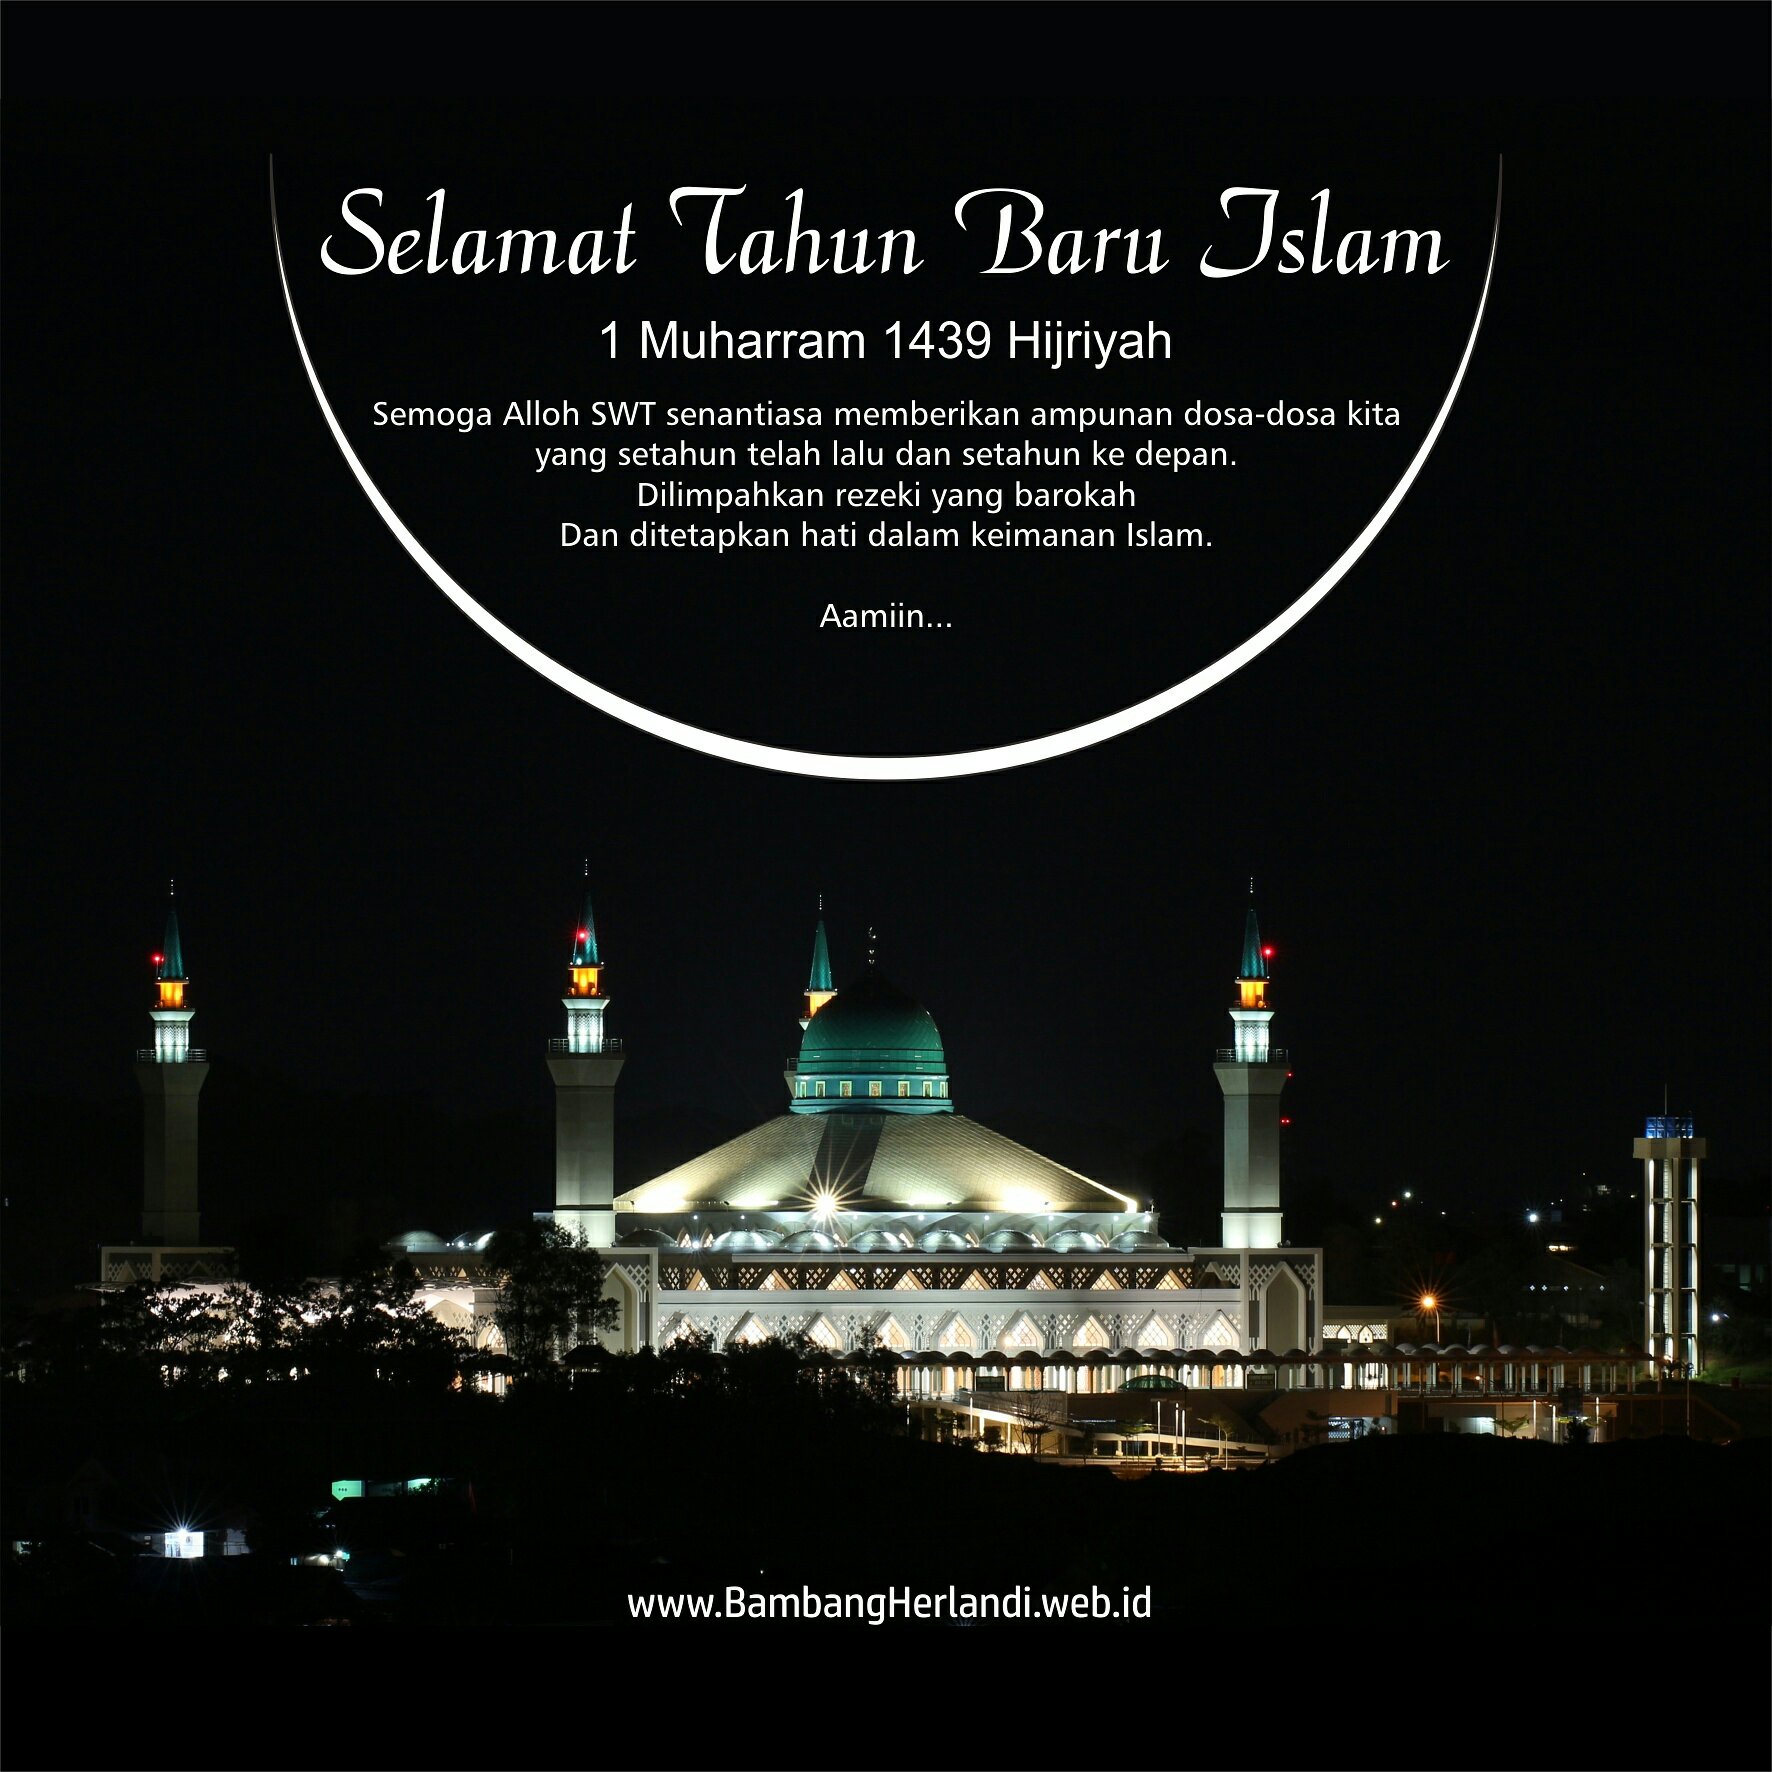 Selamat Tahun Baru Islam 1439 Hijriyah - Blog Bambang Herlandi